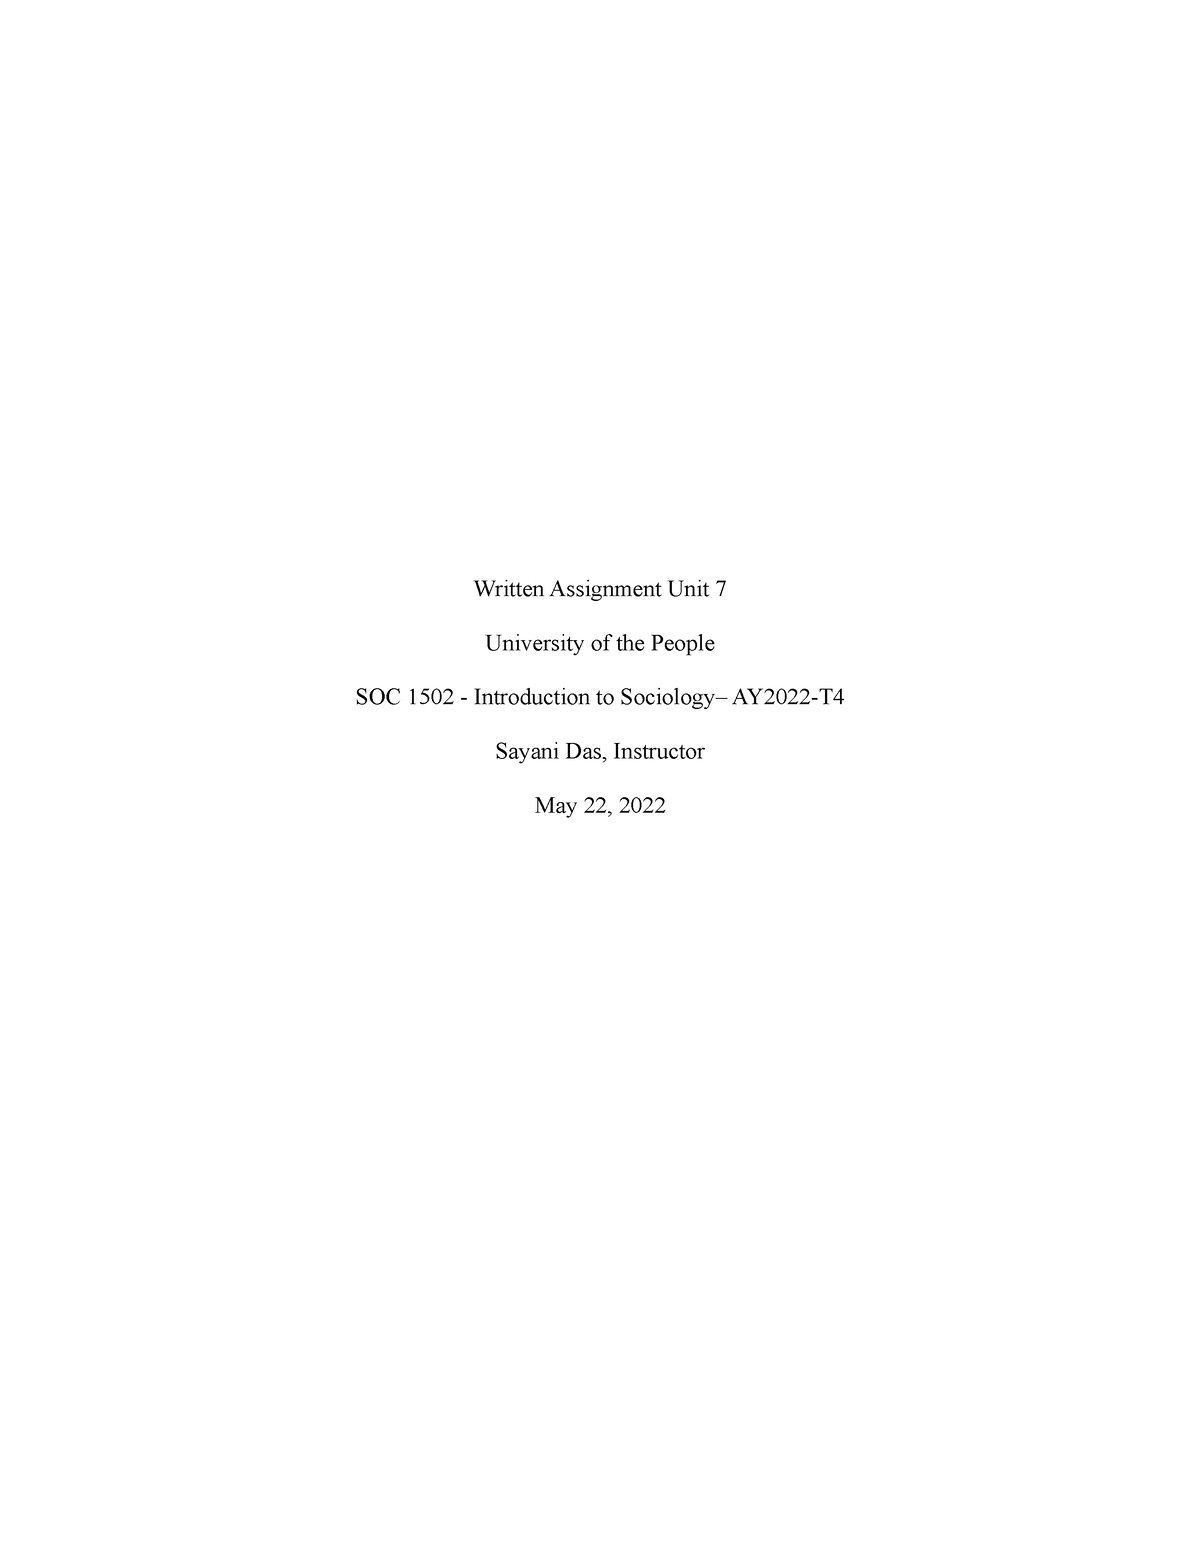 soc 1502 written assignment unit 7